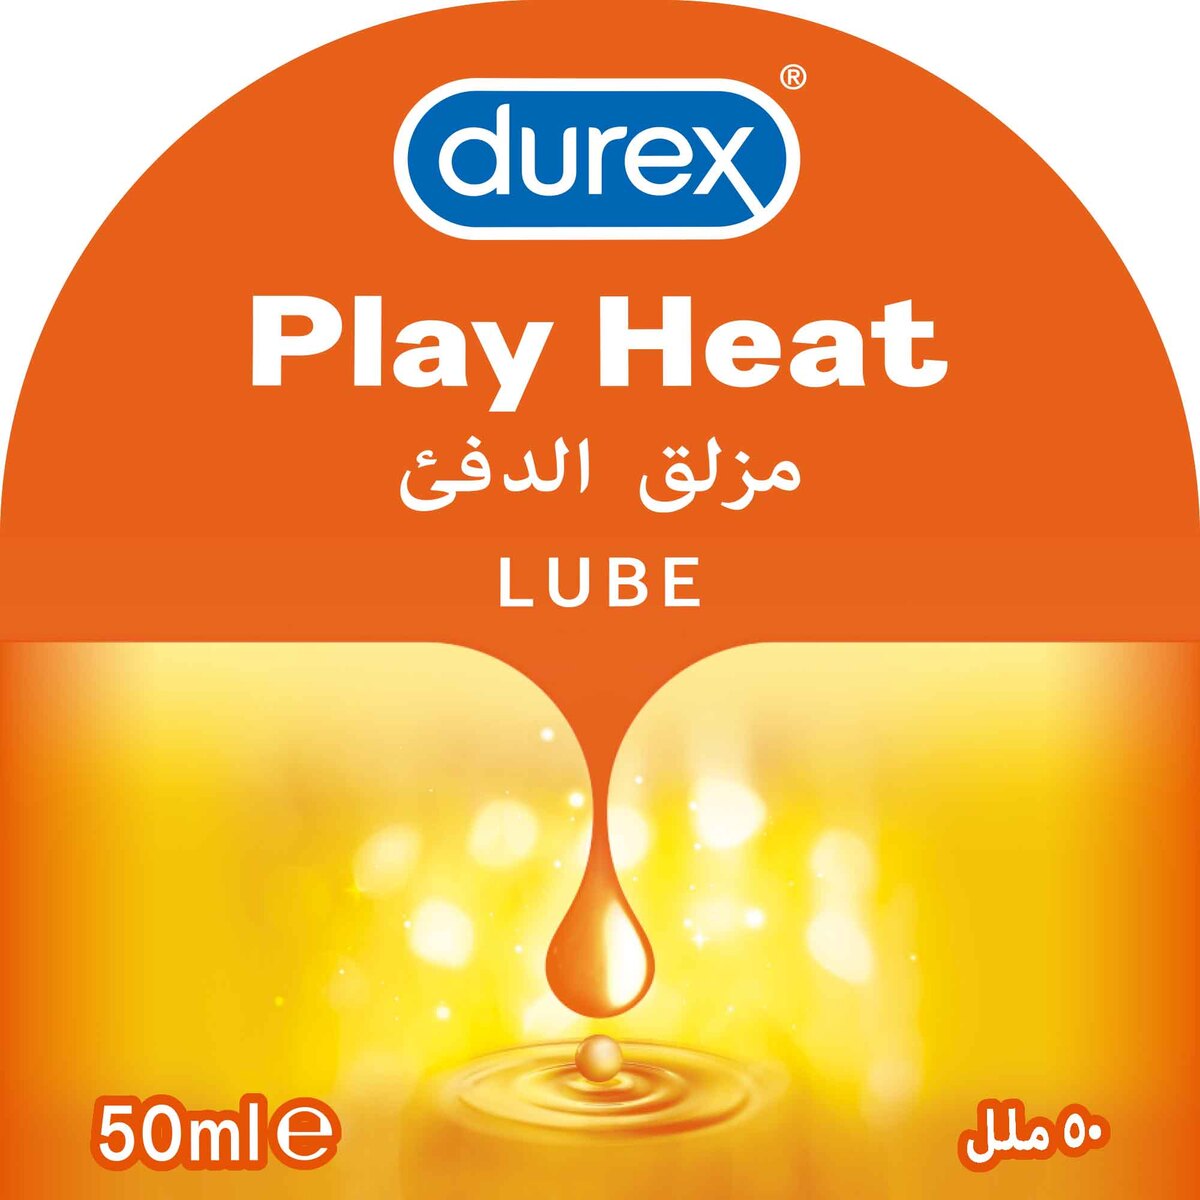 Durex Play Heat Lube 50 ml